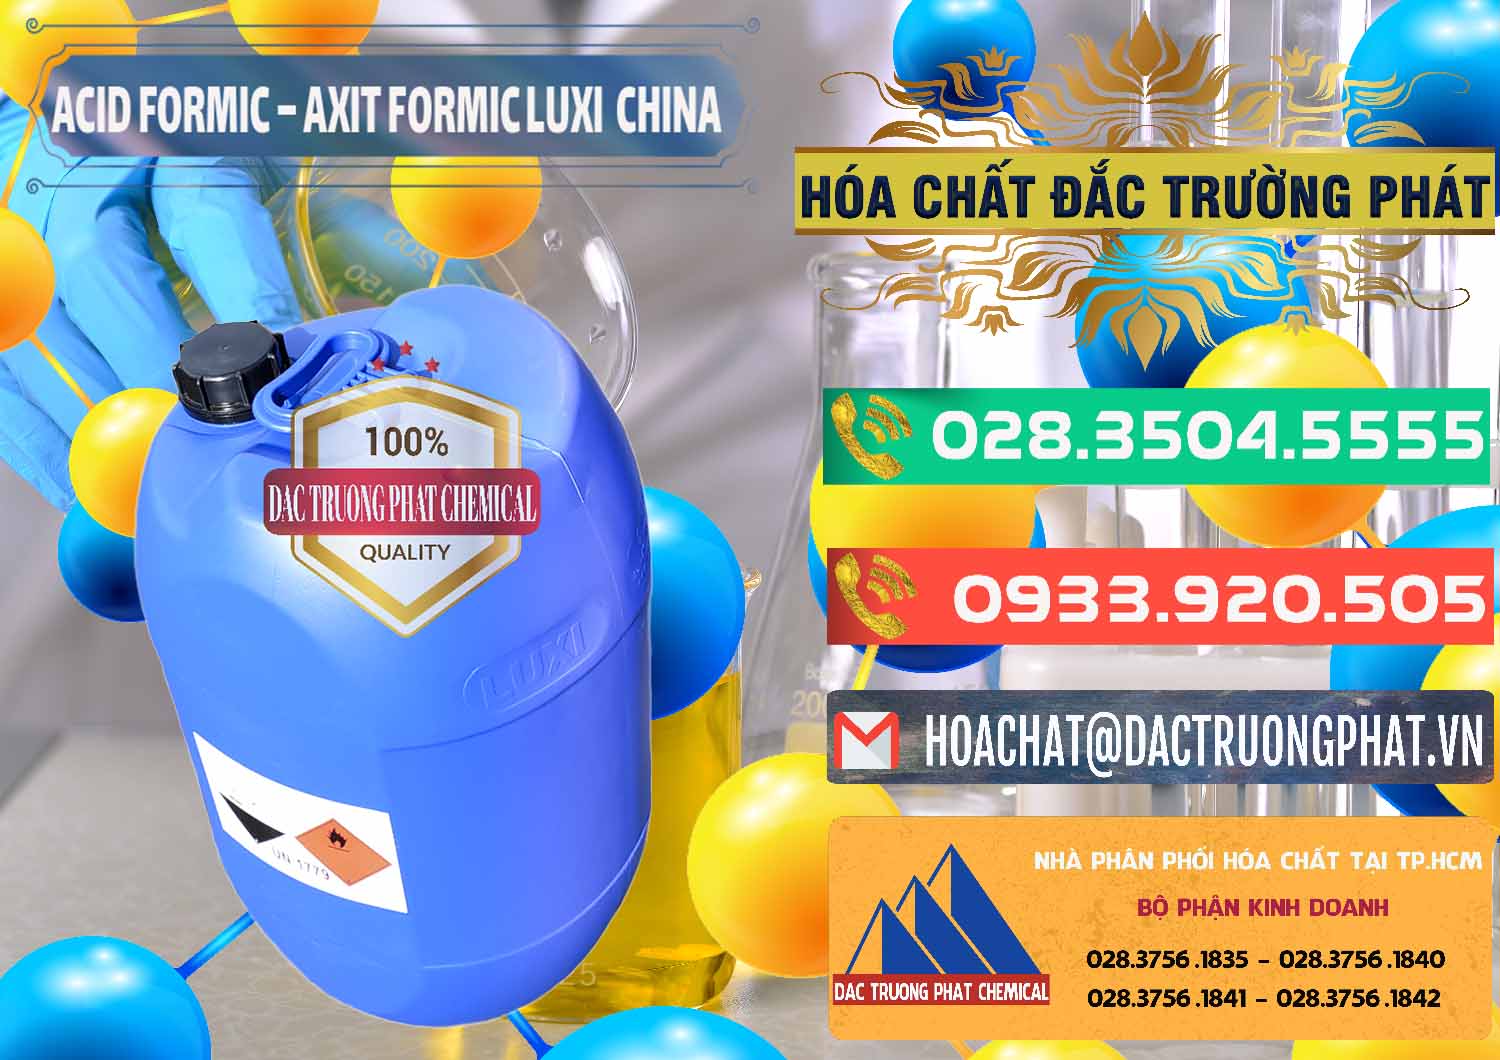 Nơi chuyên phân phối và bán Acid Formic - Axit Formic Luxi Trung Quốc China - 0029 - Cty chuyên cung cấp - nhập khẩu hóa chất tại TP.HCM - congtyhoachat.com.vn